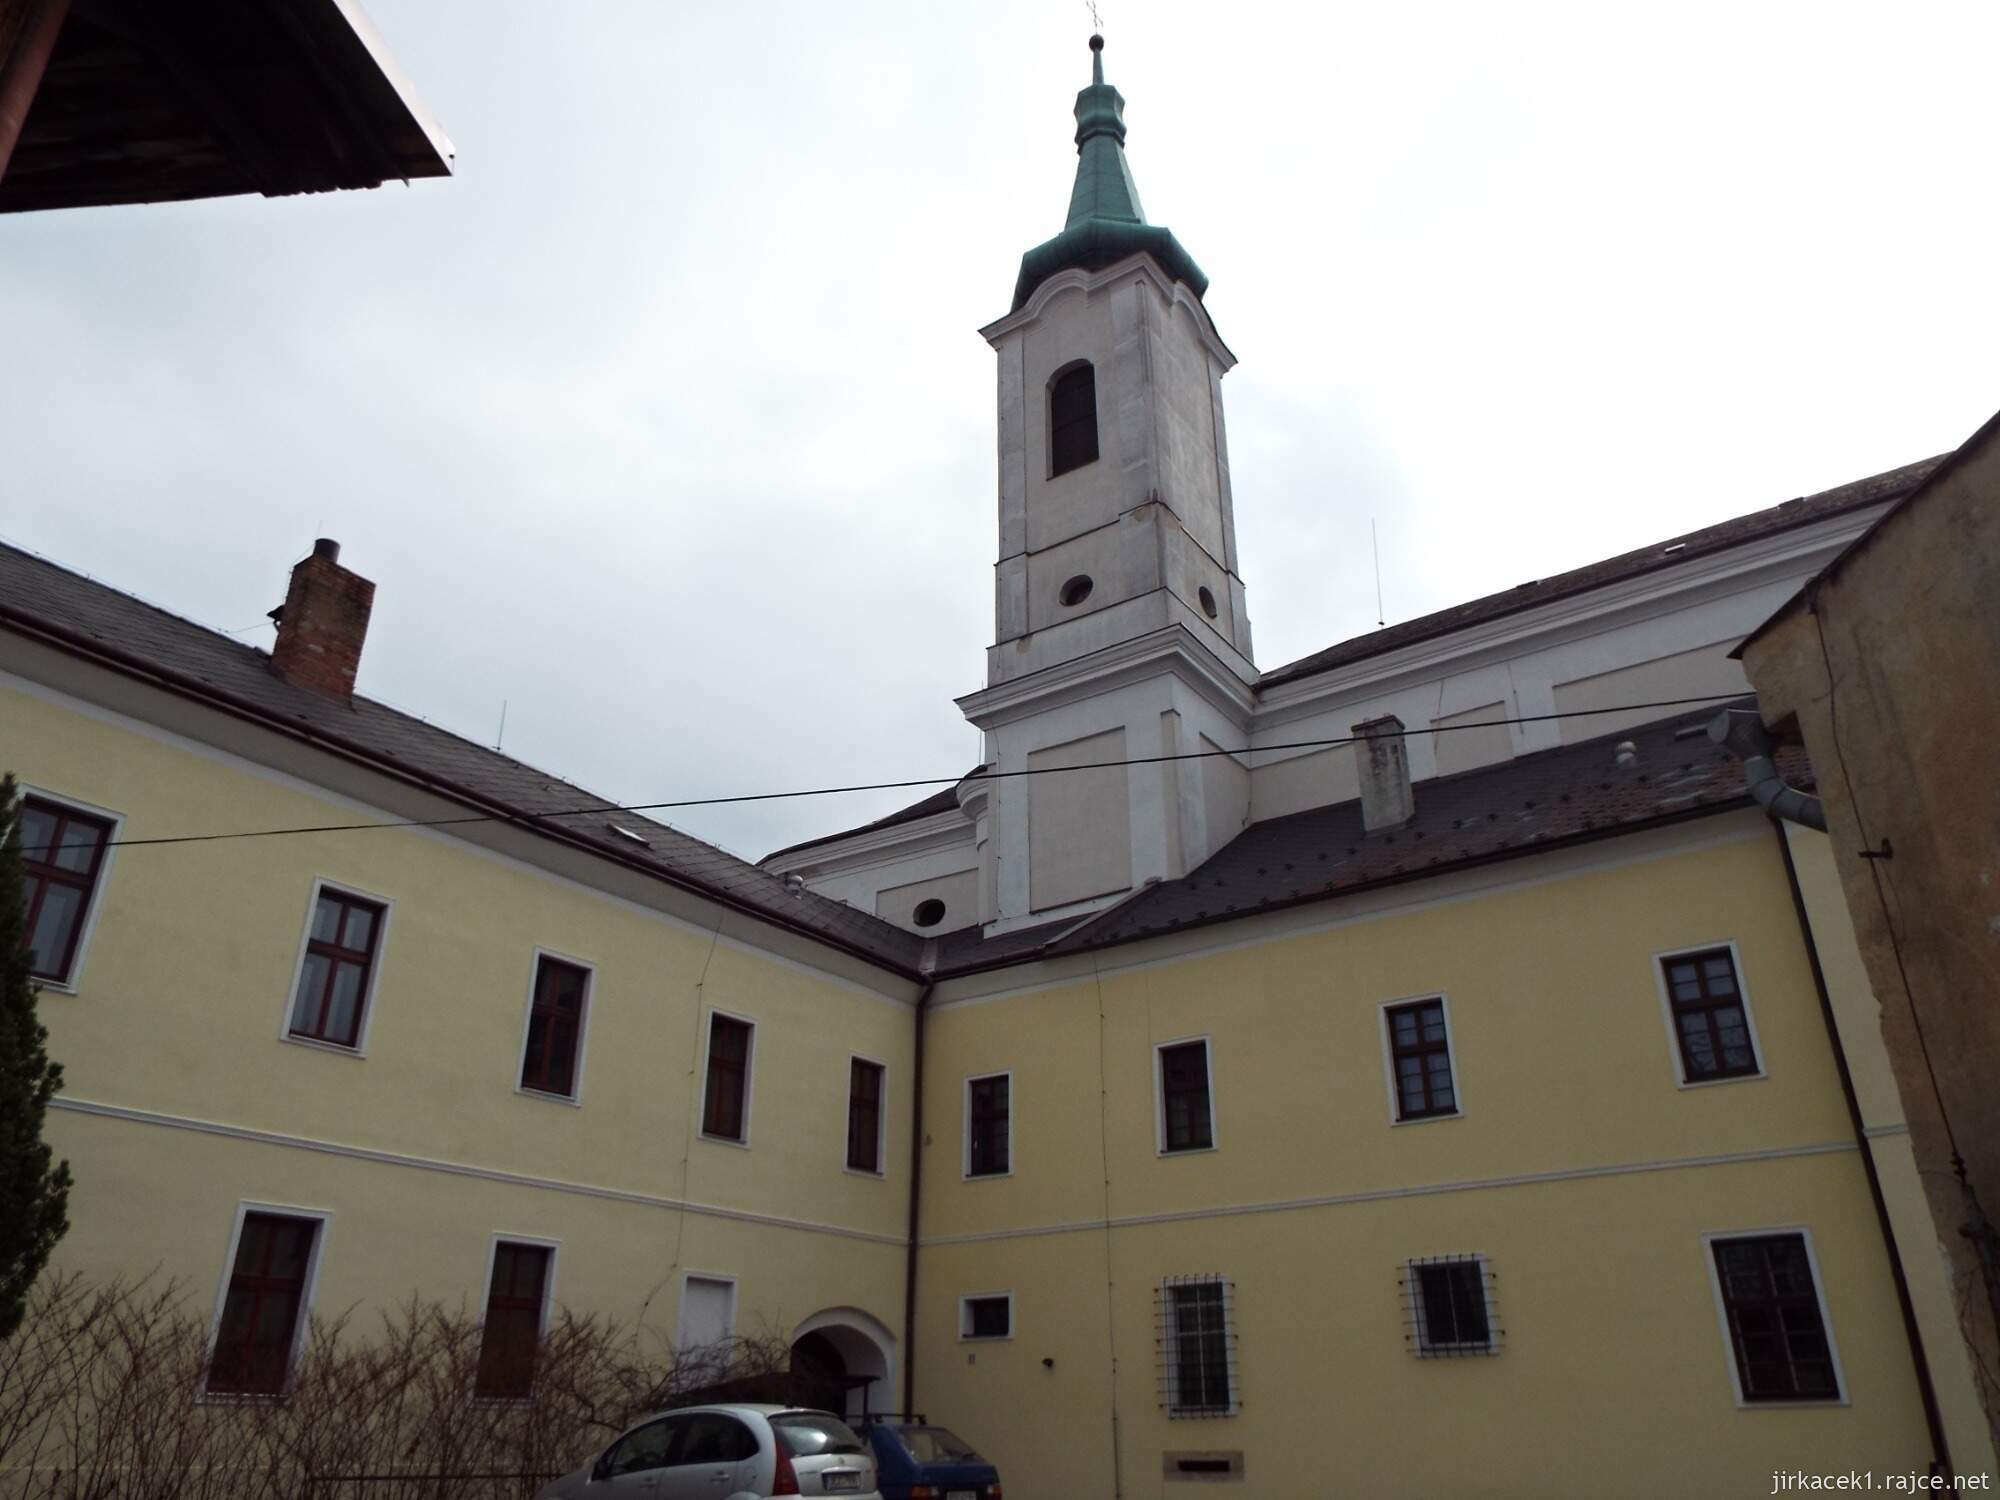 06 - Jevíčko - Kostel Nanebevzetí Panny Marie s klášterem Augustiánů 08